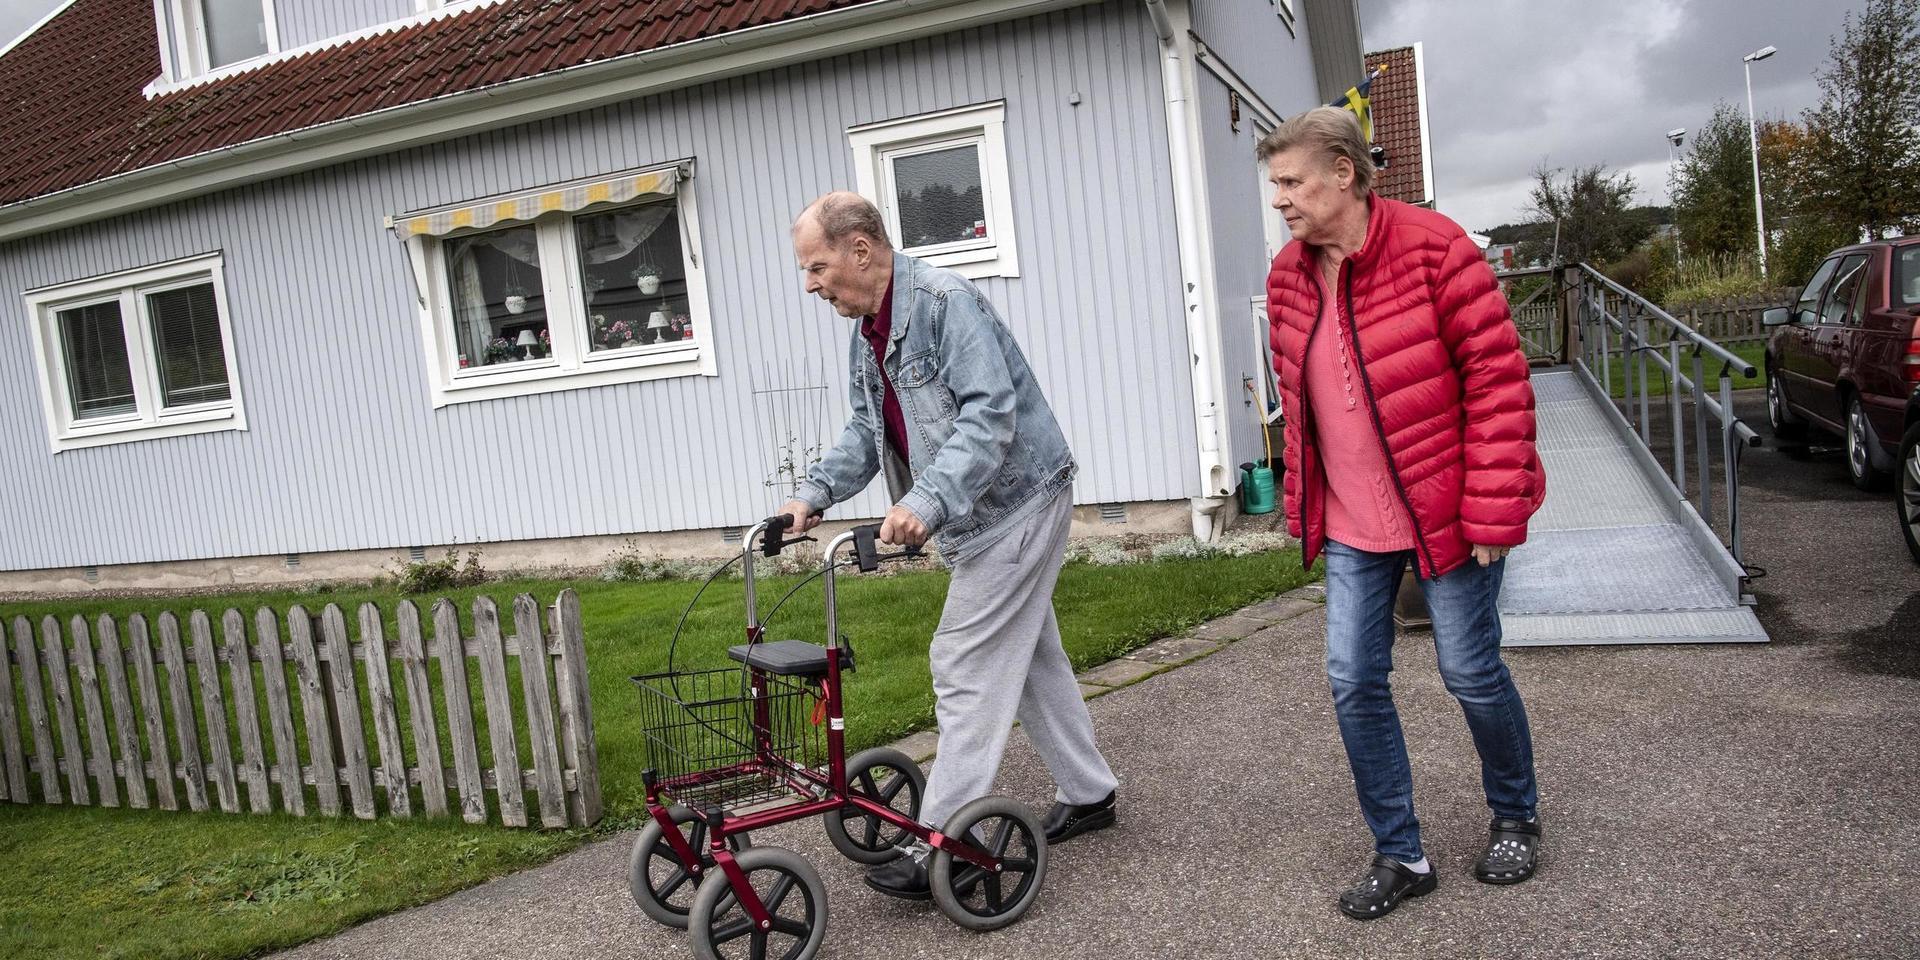 Jarl Månsson har varit yrkeschaufför och Lillemor har arbetat på kexfabriken i Kungälv. Nu är de pensionärer sedan ganska länge.